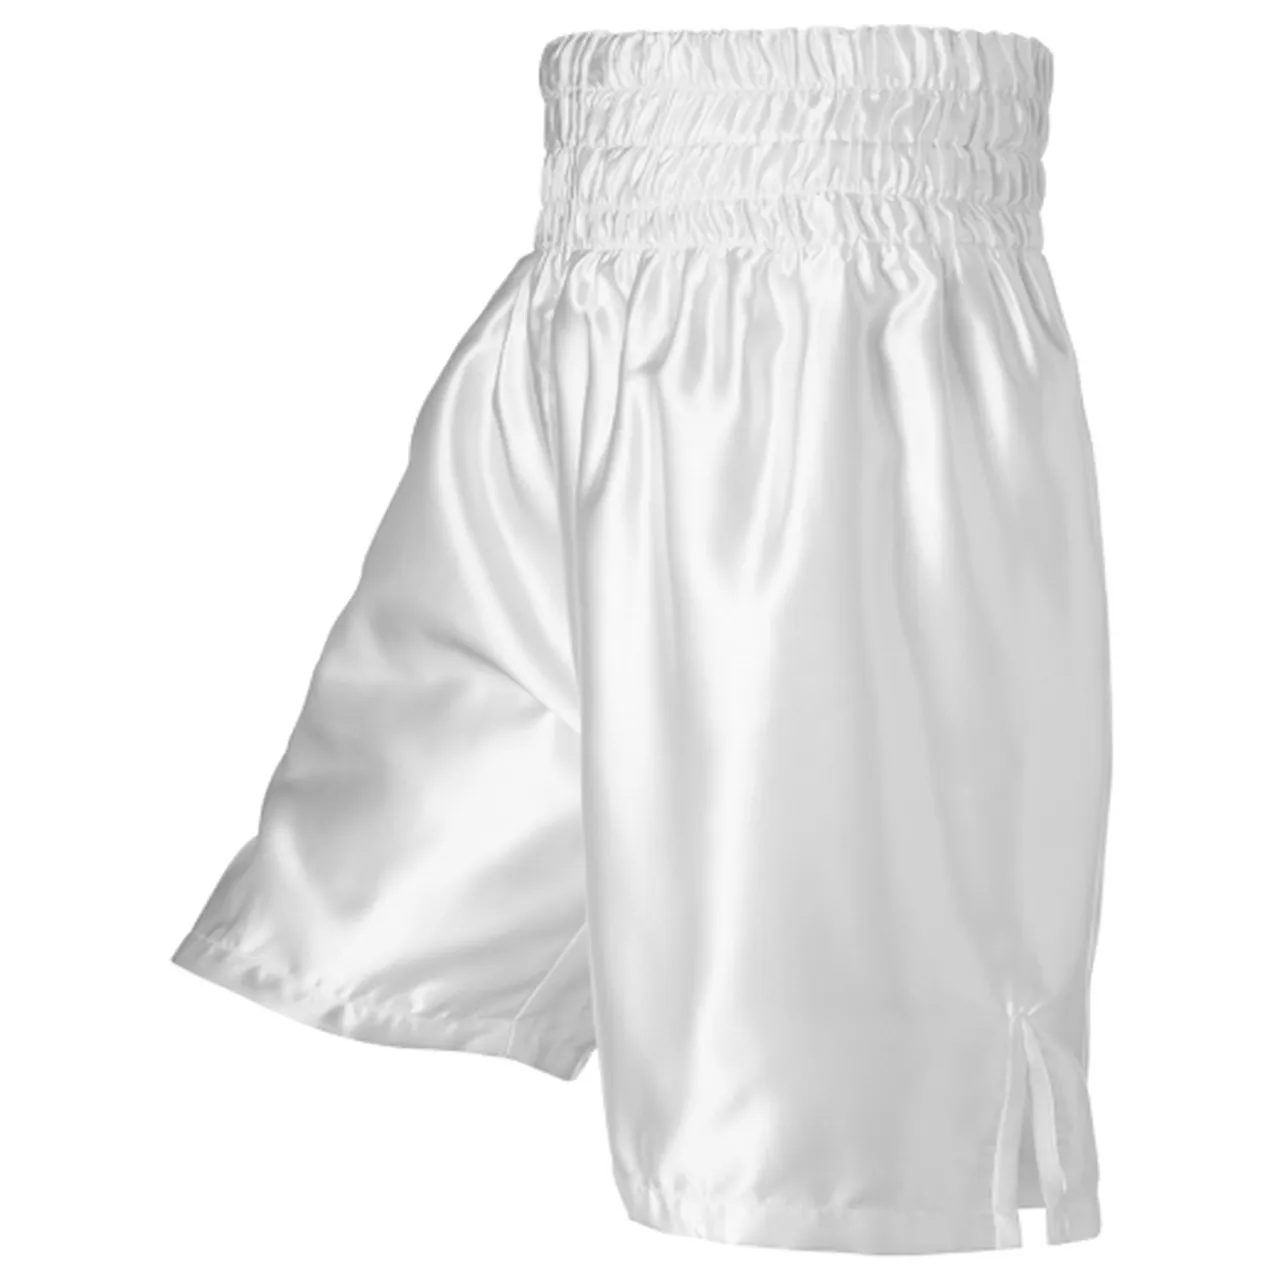 Shorts de boxe, branco de alta qualidade, luta de boxe, estampa personalizada, muay thai, mma, boxe